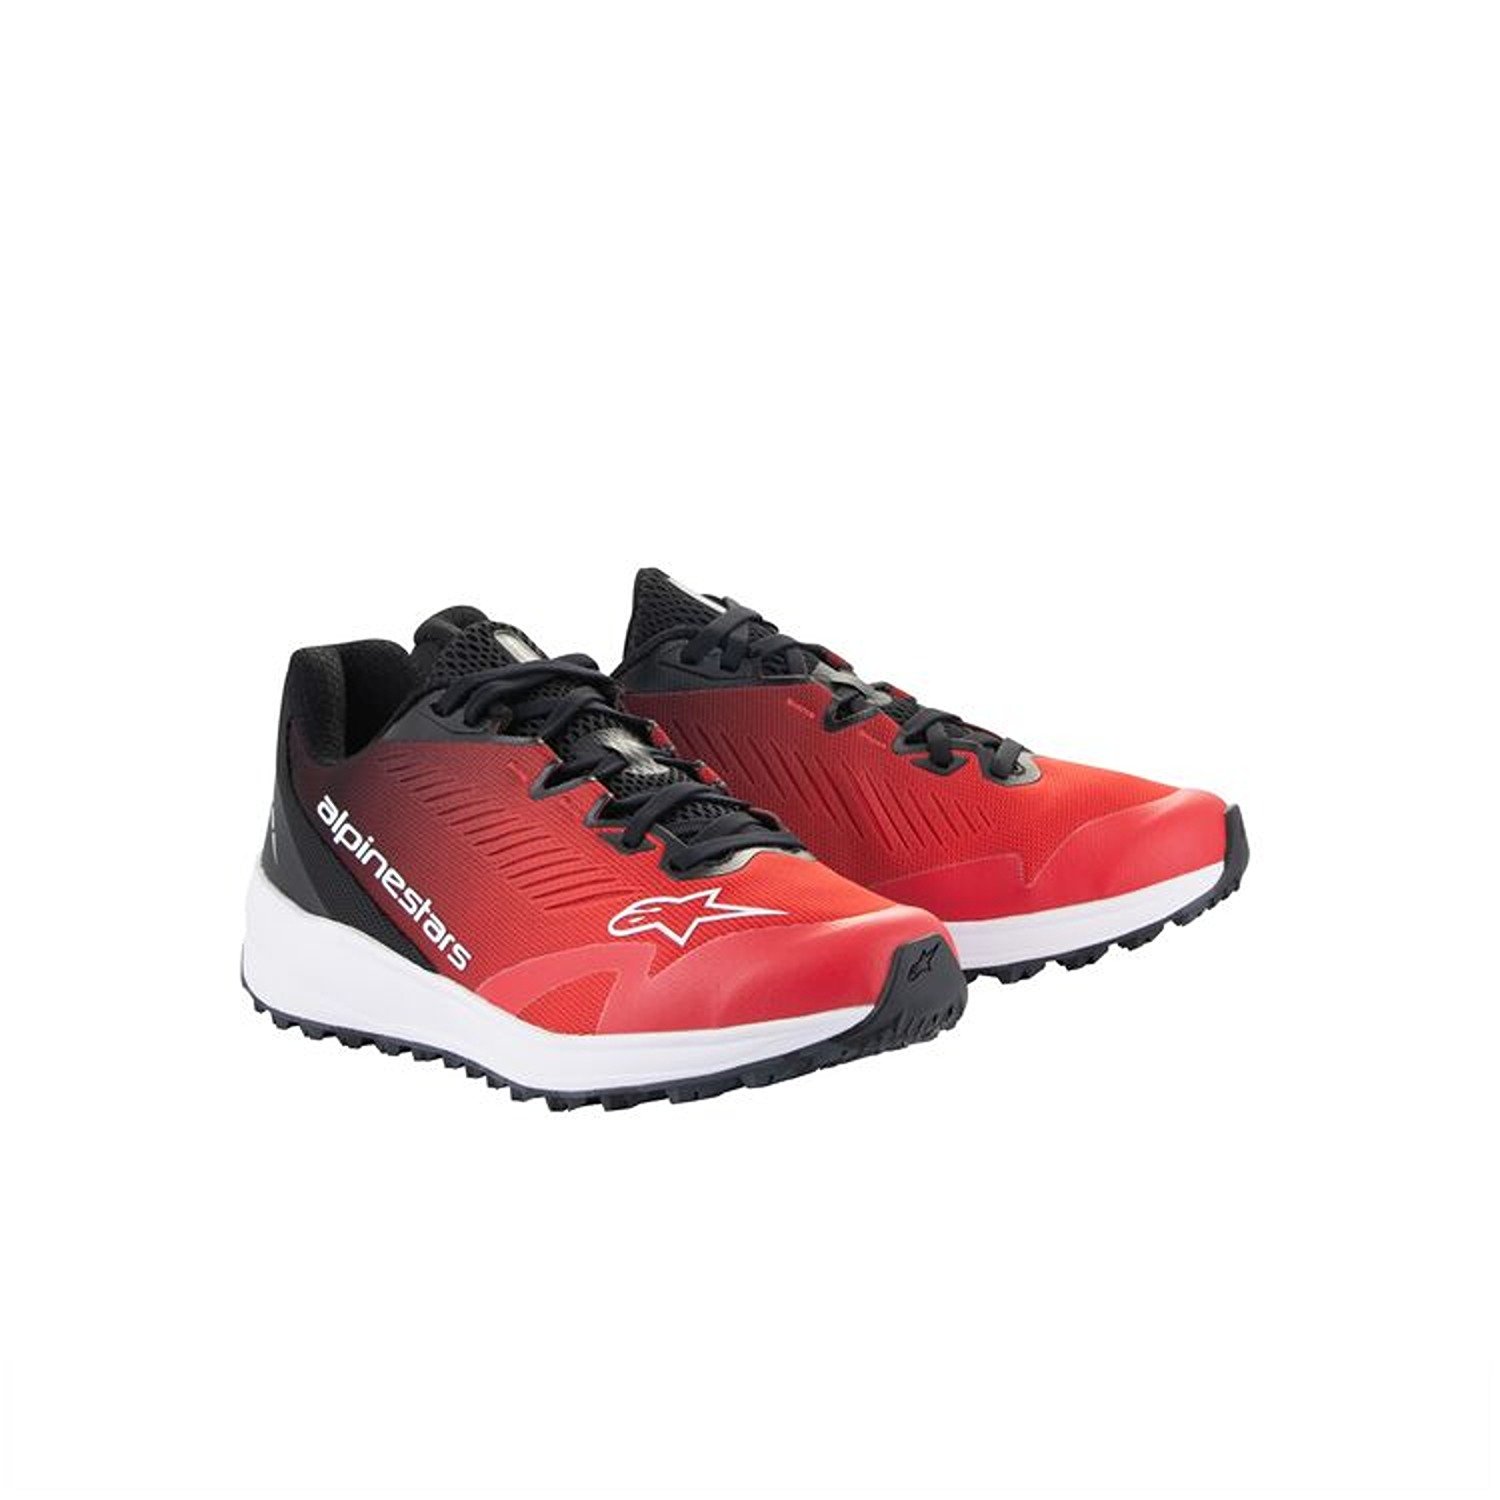 Image of Alpinestars Meta Road V2 Shoes Red Black White Größe US 55